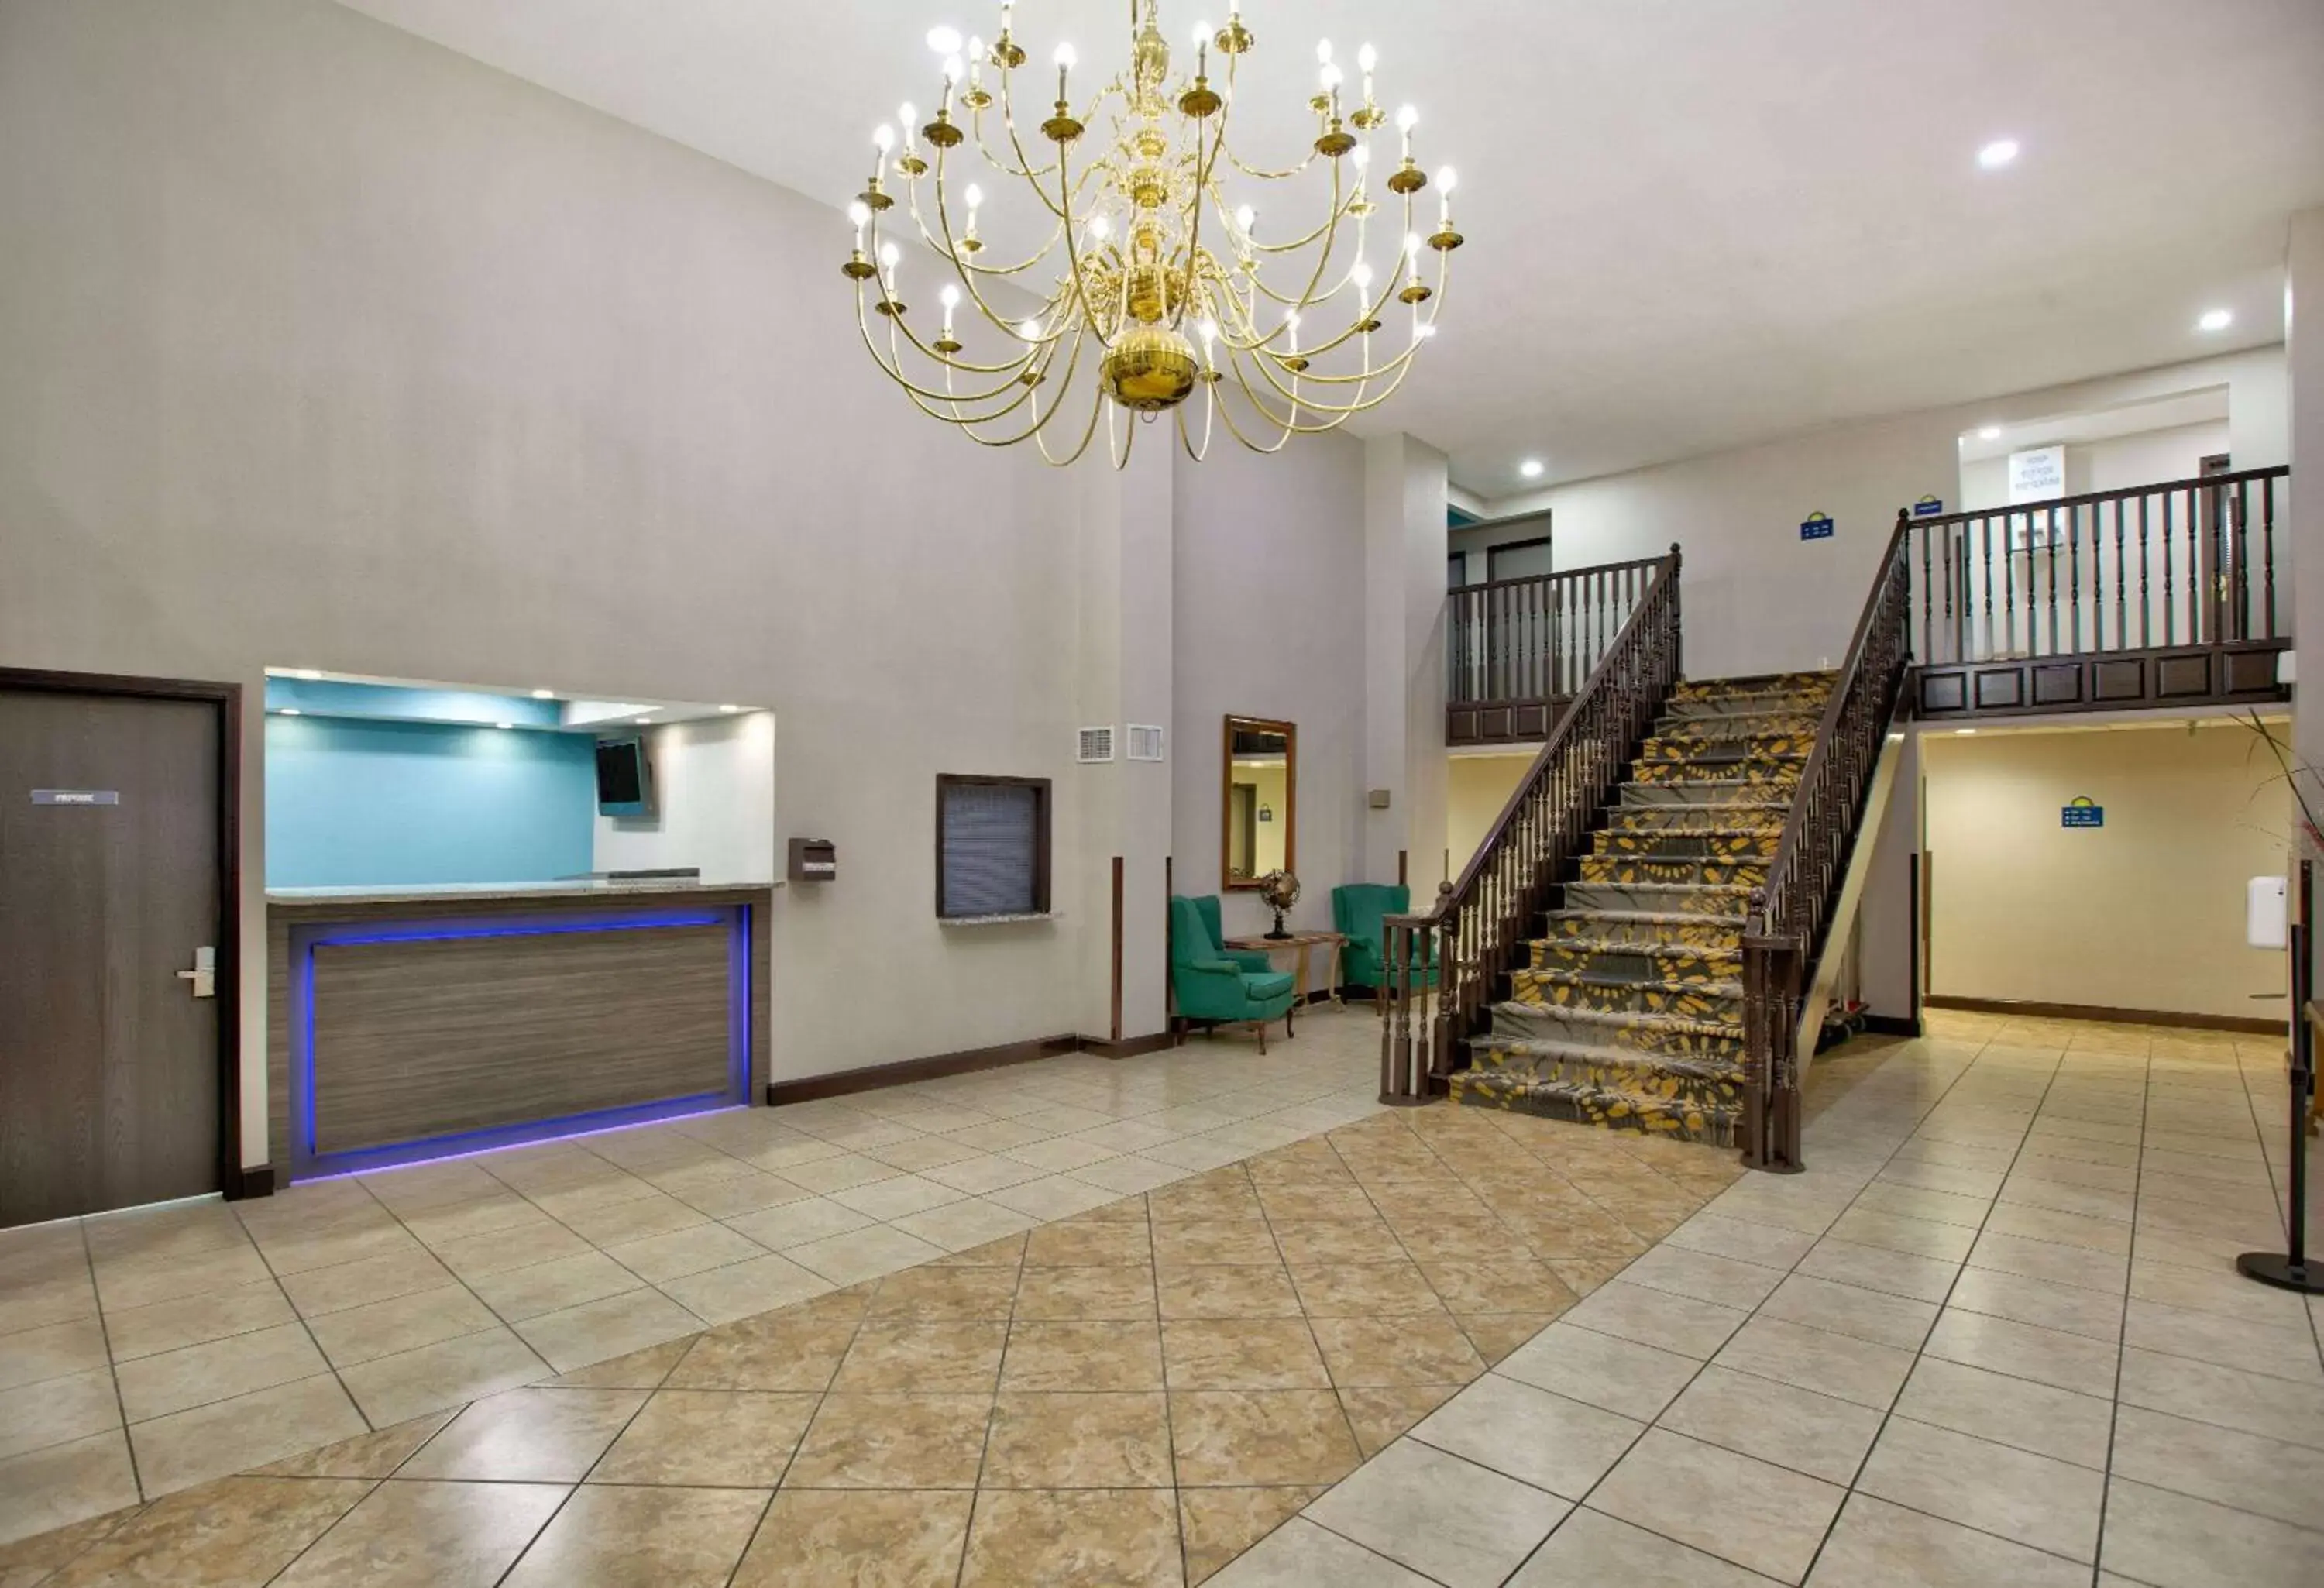 Lobby or reception, Lobby/Reception in Days Inn by Wyndham Tunica Resorts